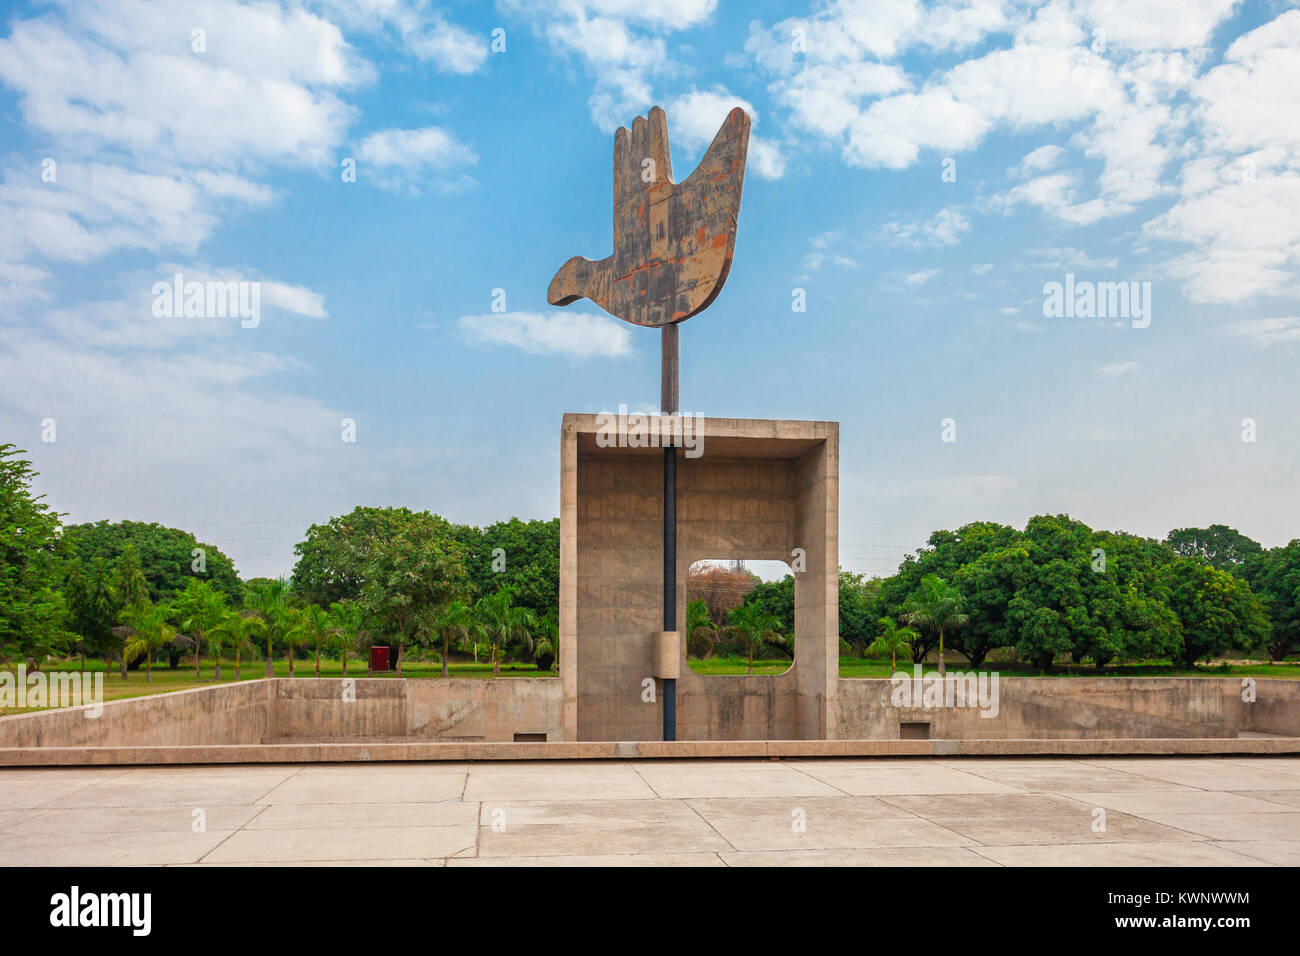 La mano aperta monumento è una struttura simbolica situato nell'Unione indiana Territorio di chandigarh, India, Foto Stock